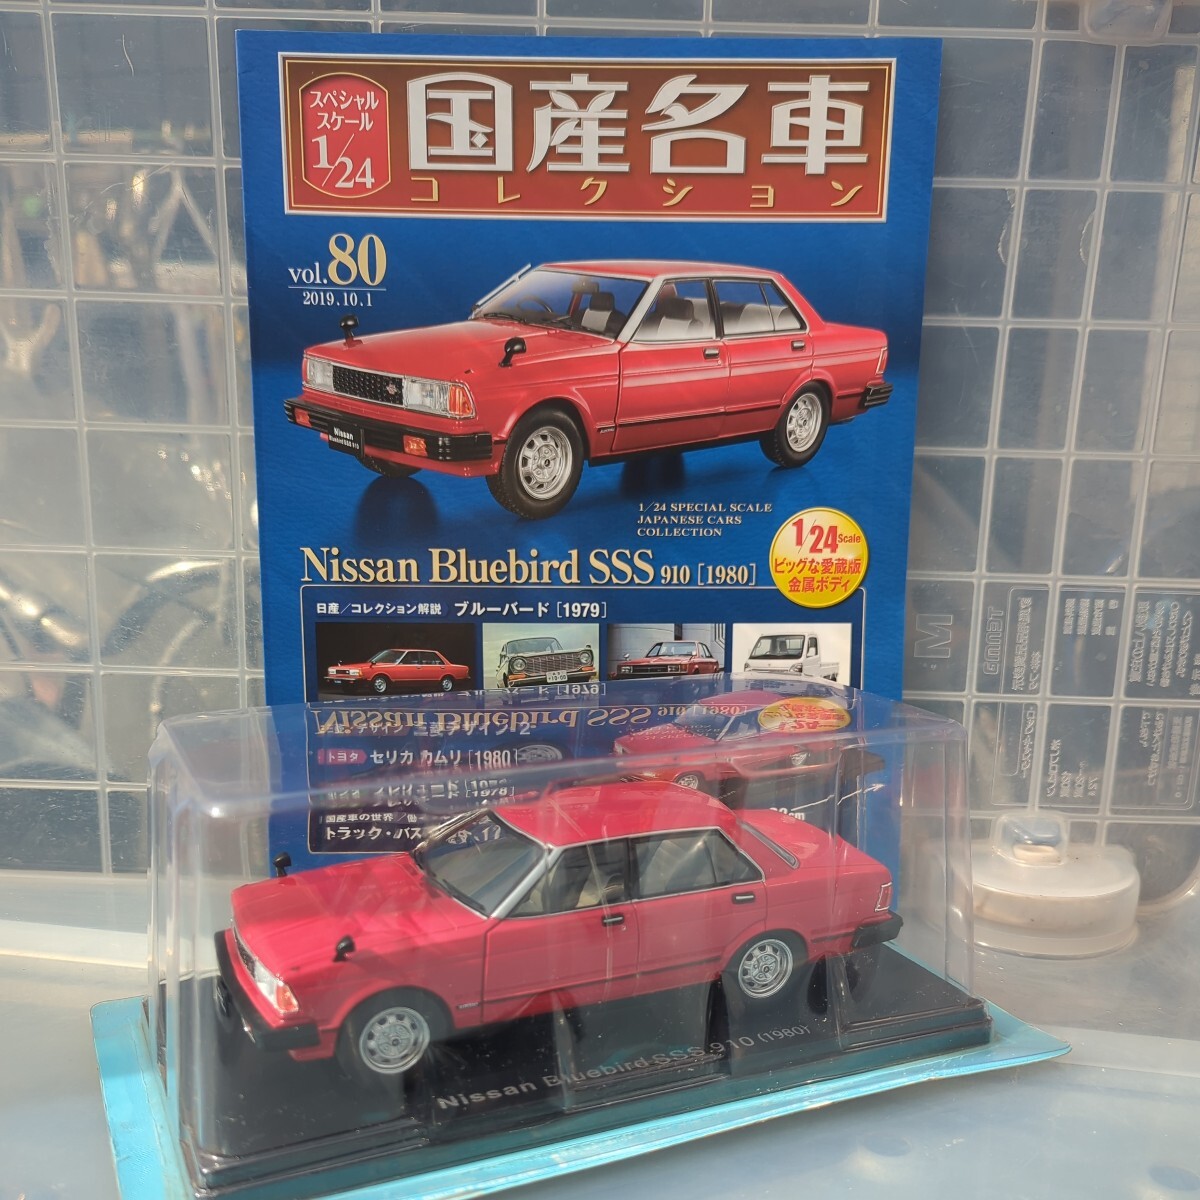 1/24 国産名車コレクション Nissan Bluebird SSS 910 1980の画像1